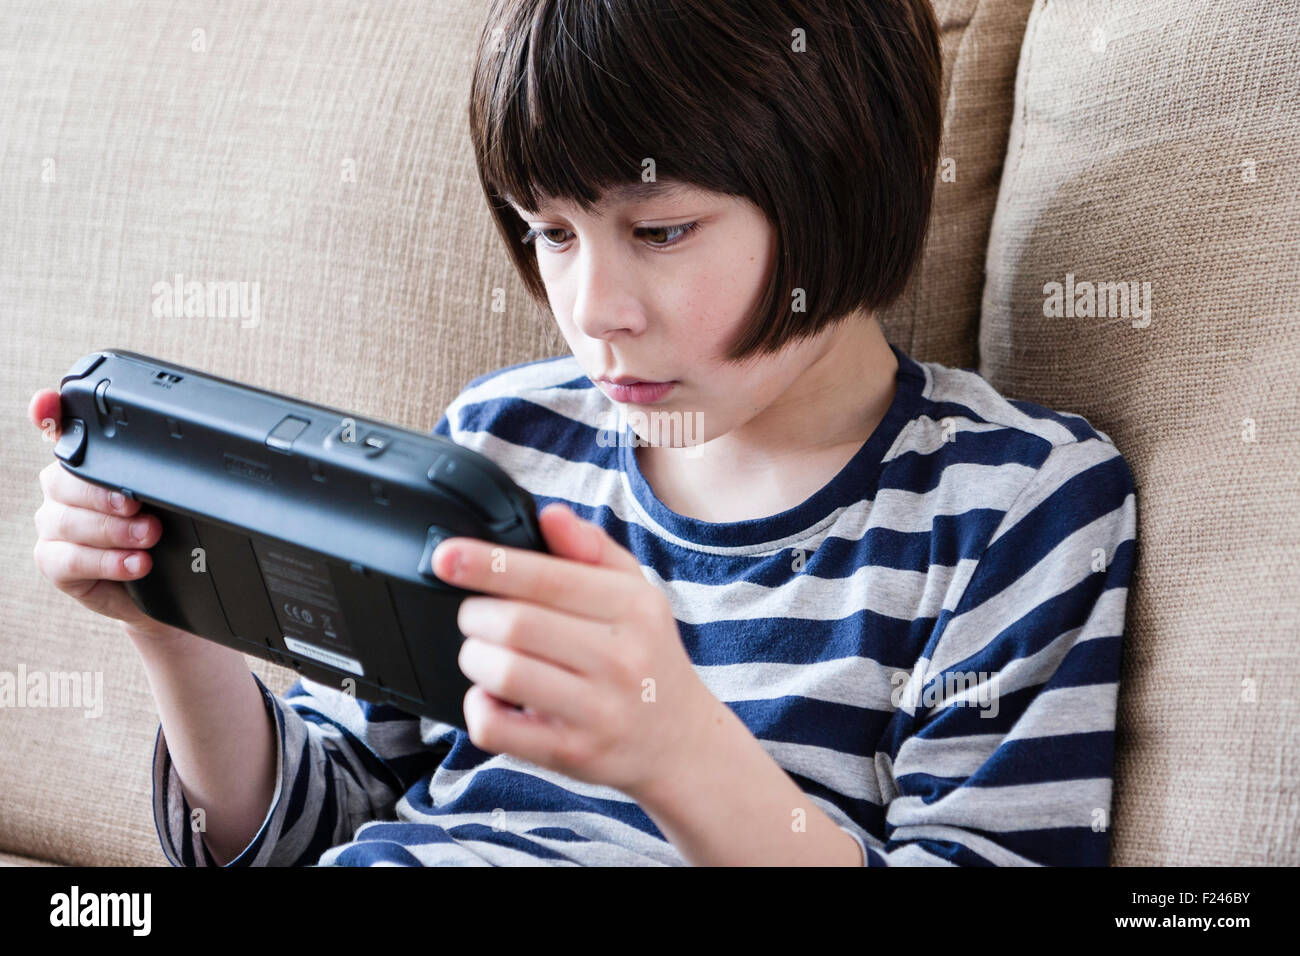 Homme caucasien enfant, garçon, 10-12 ans, assis tenant une console de jeu Nintendo Wii en concentrant les deux mains, la tête et épaules Vue de côté. Banque D'Images